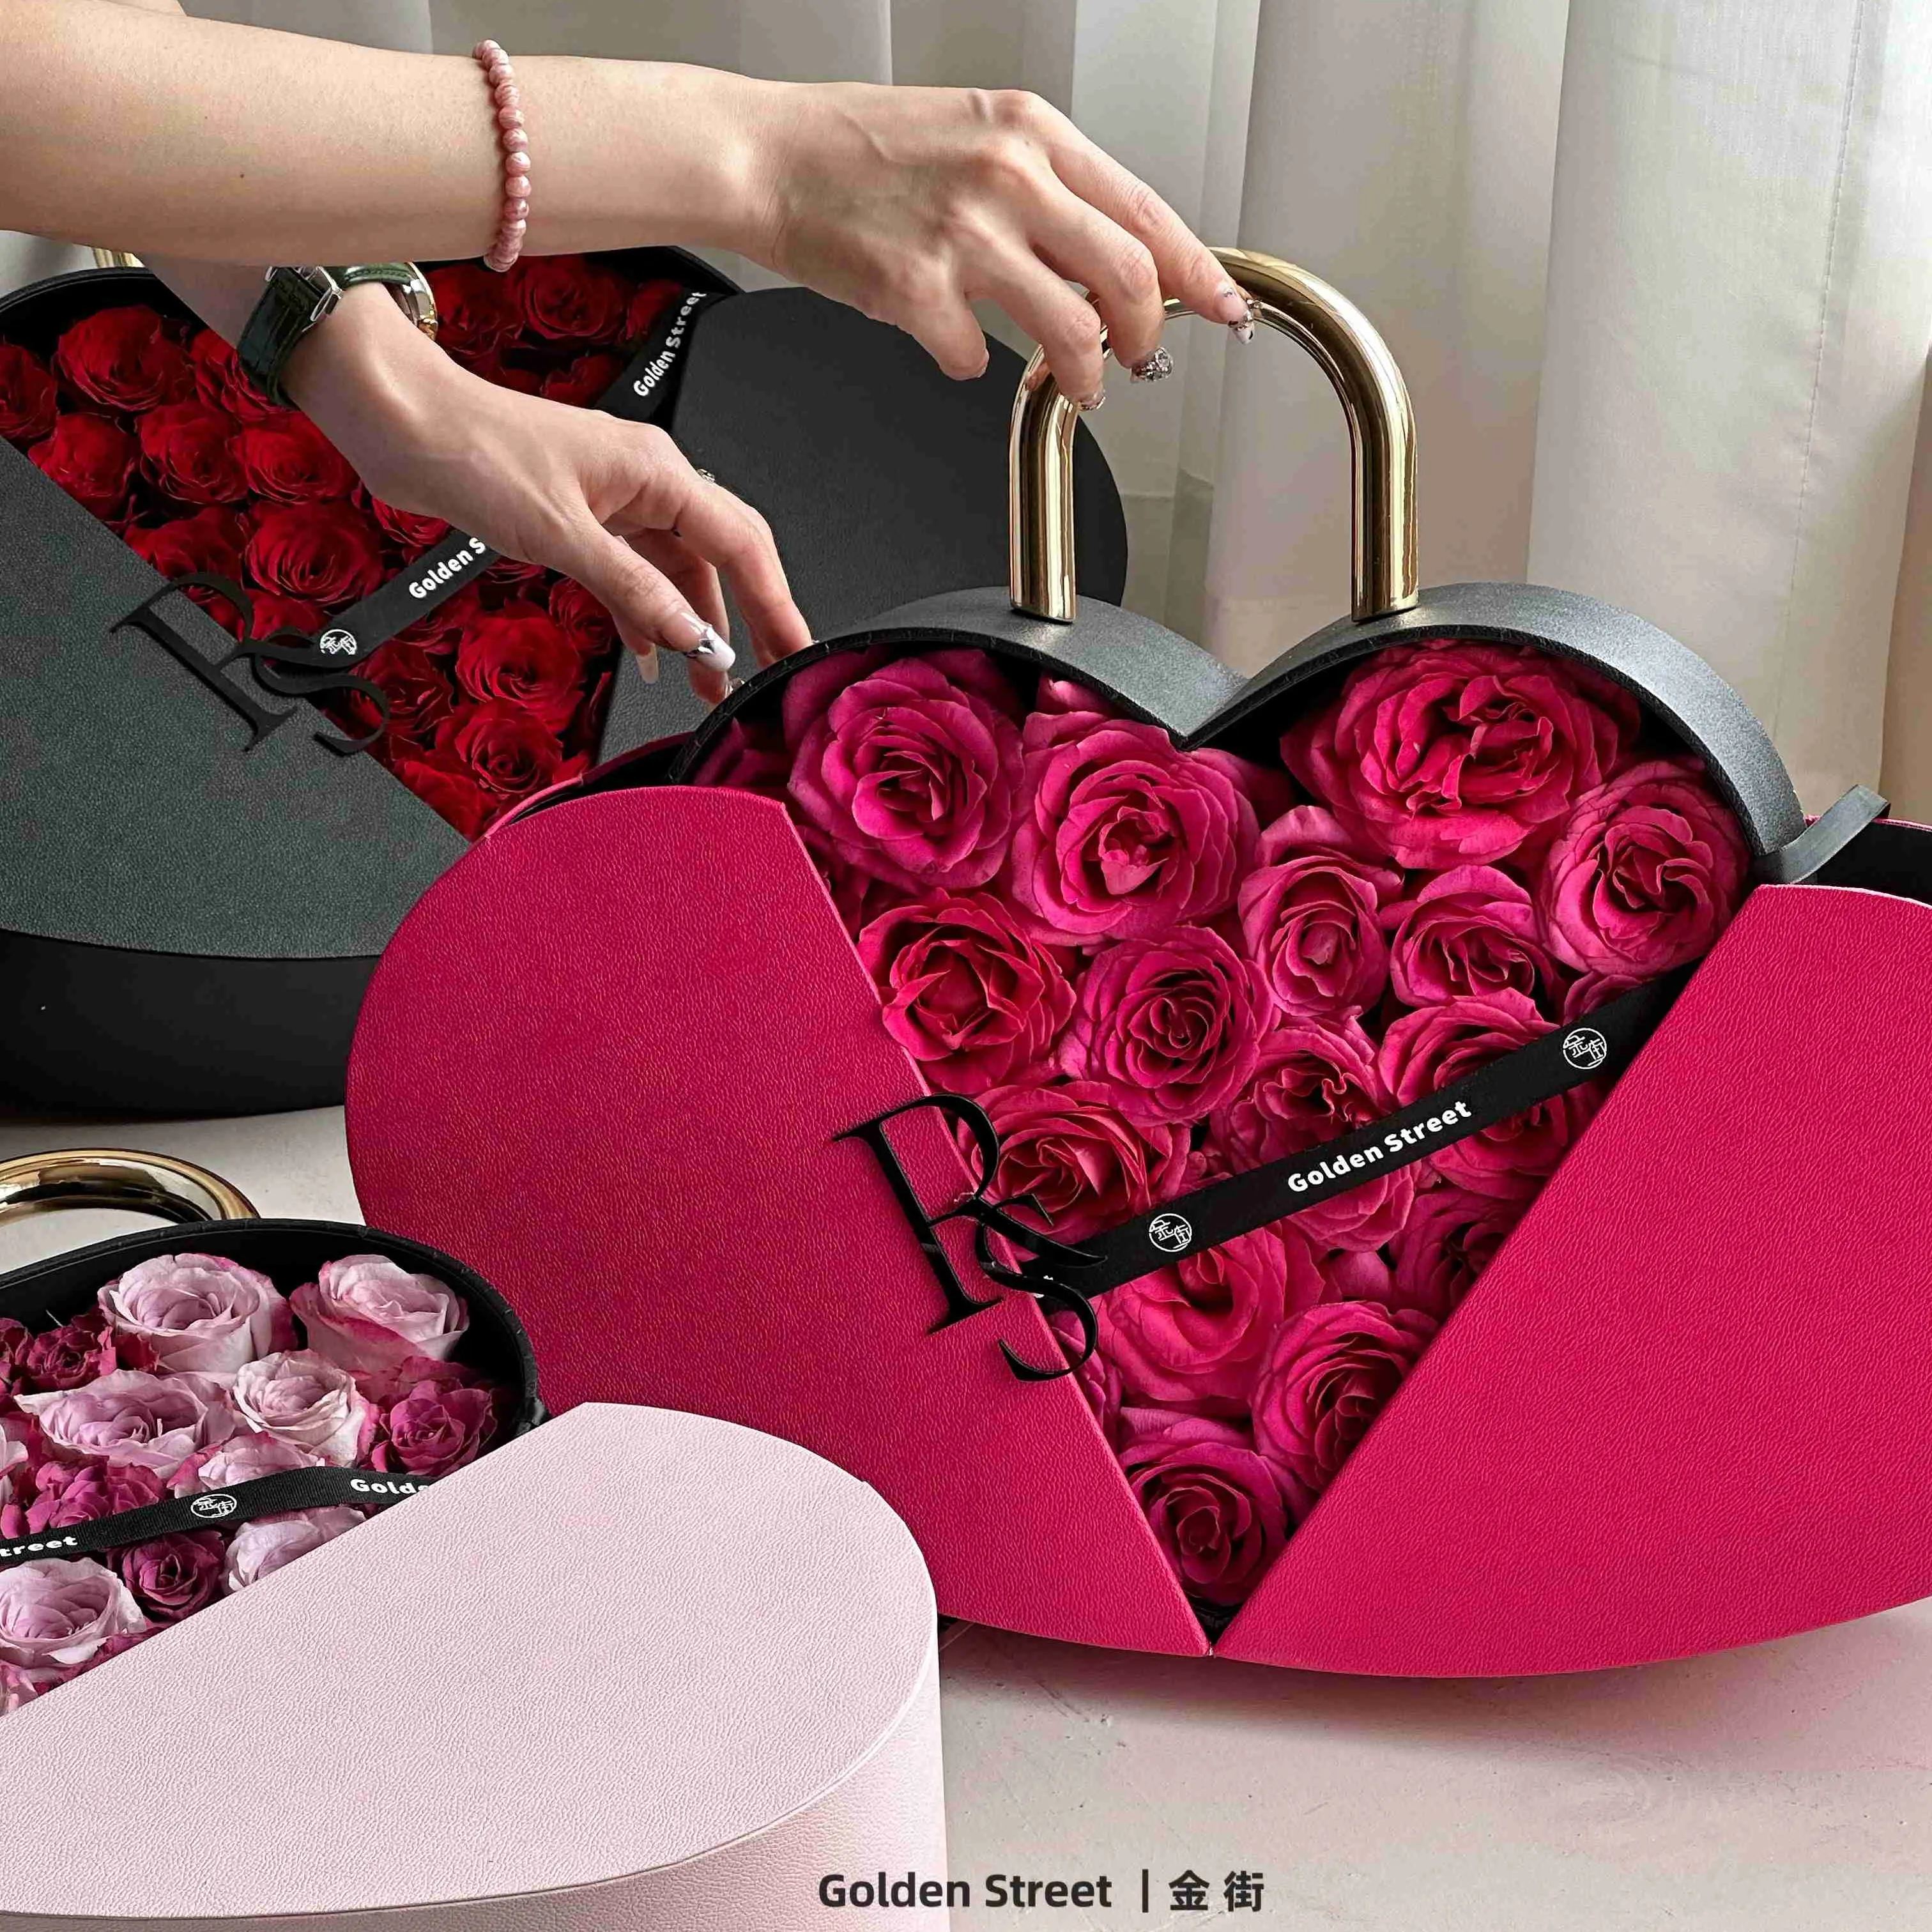 Doppelte Liebe Hand gehalten Valentinstag Waschbecken Proof Blume Geschenk box Obst Begleiter Geschenk box